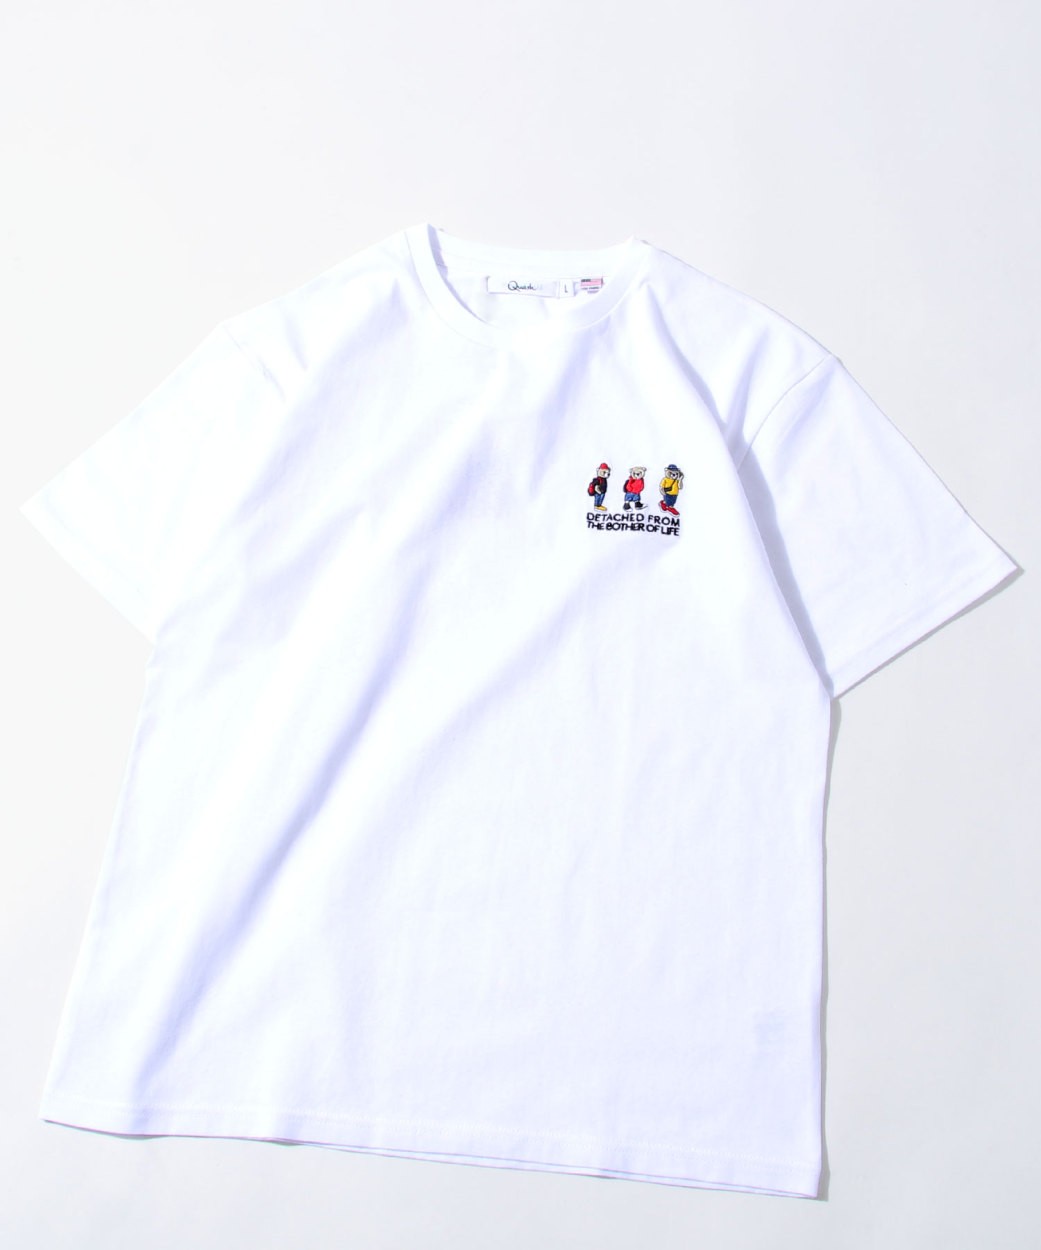 Tシャツ Tシャツ メンズ おしゃれ 半袖 カットソー ロゴ ロゴ刺繍 ワンポイント Usaコットン Q 152 21g Zip 通販 Paypayモール